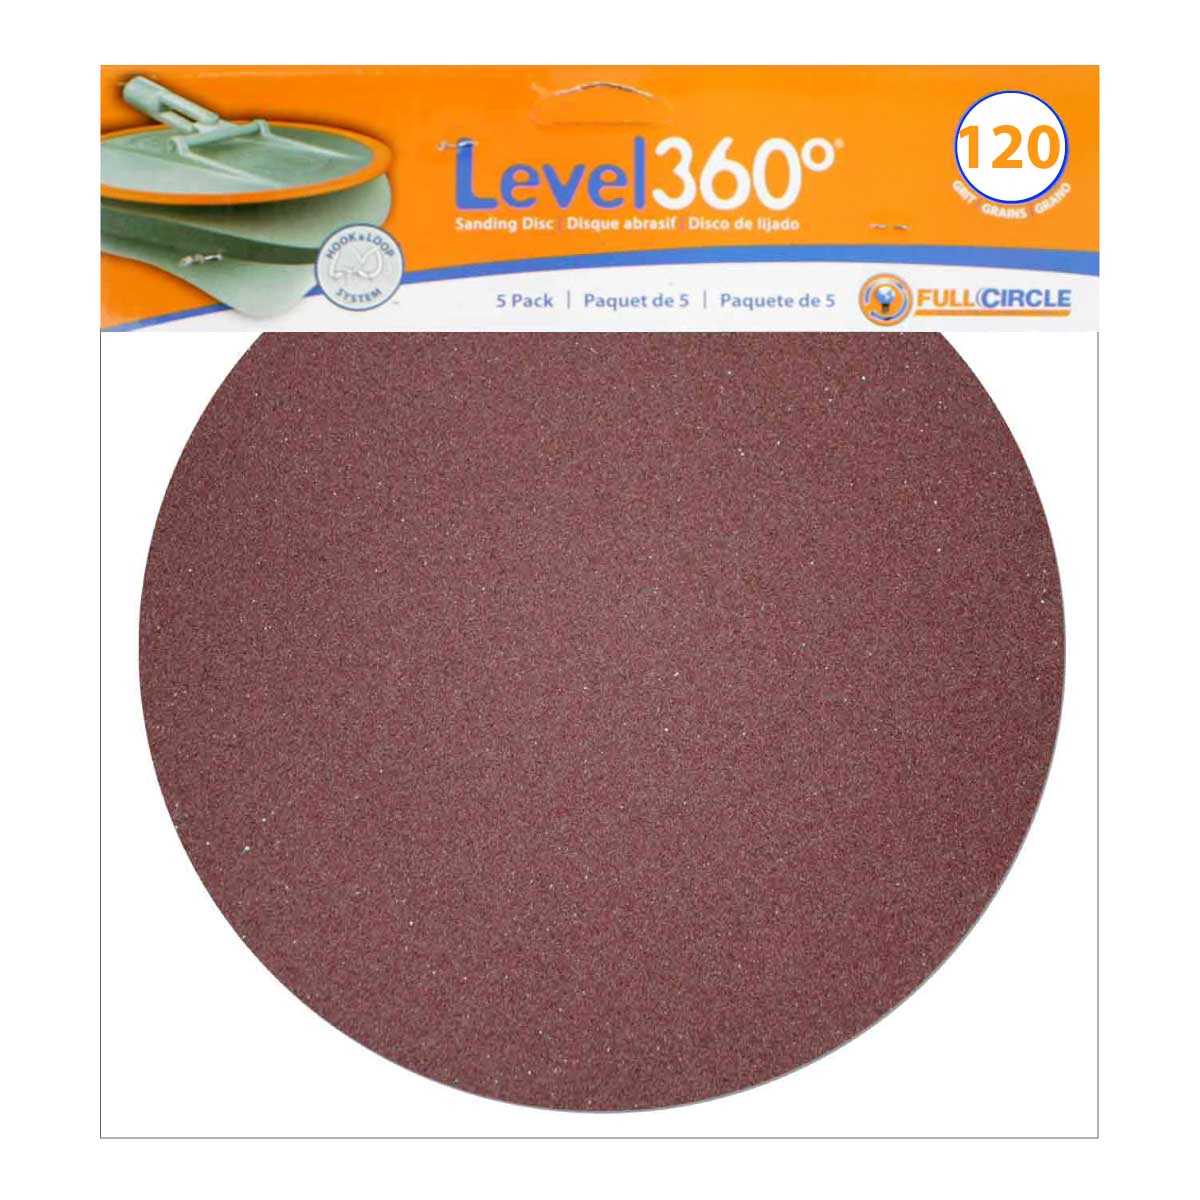 Level 360 Sanding Discs 120